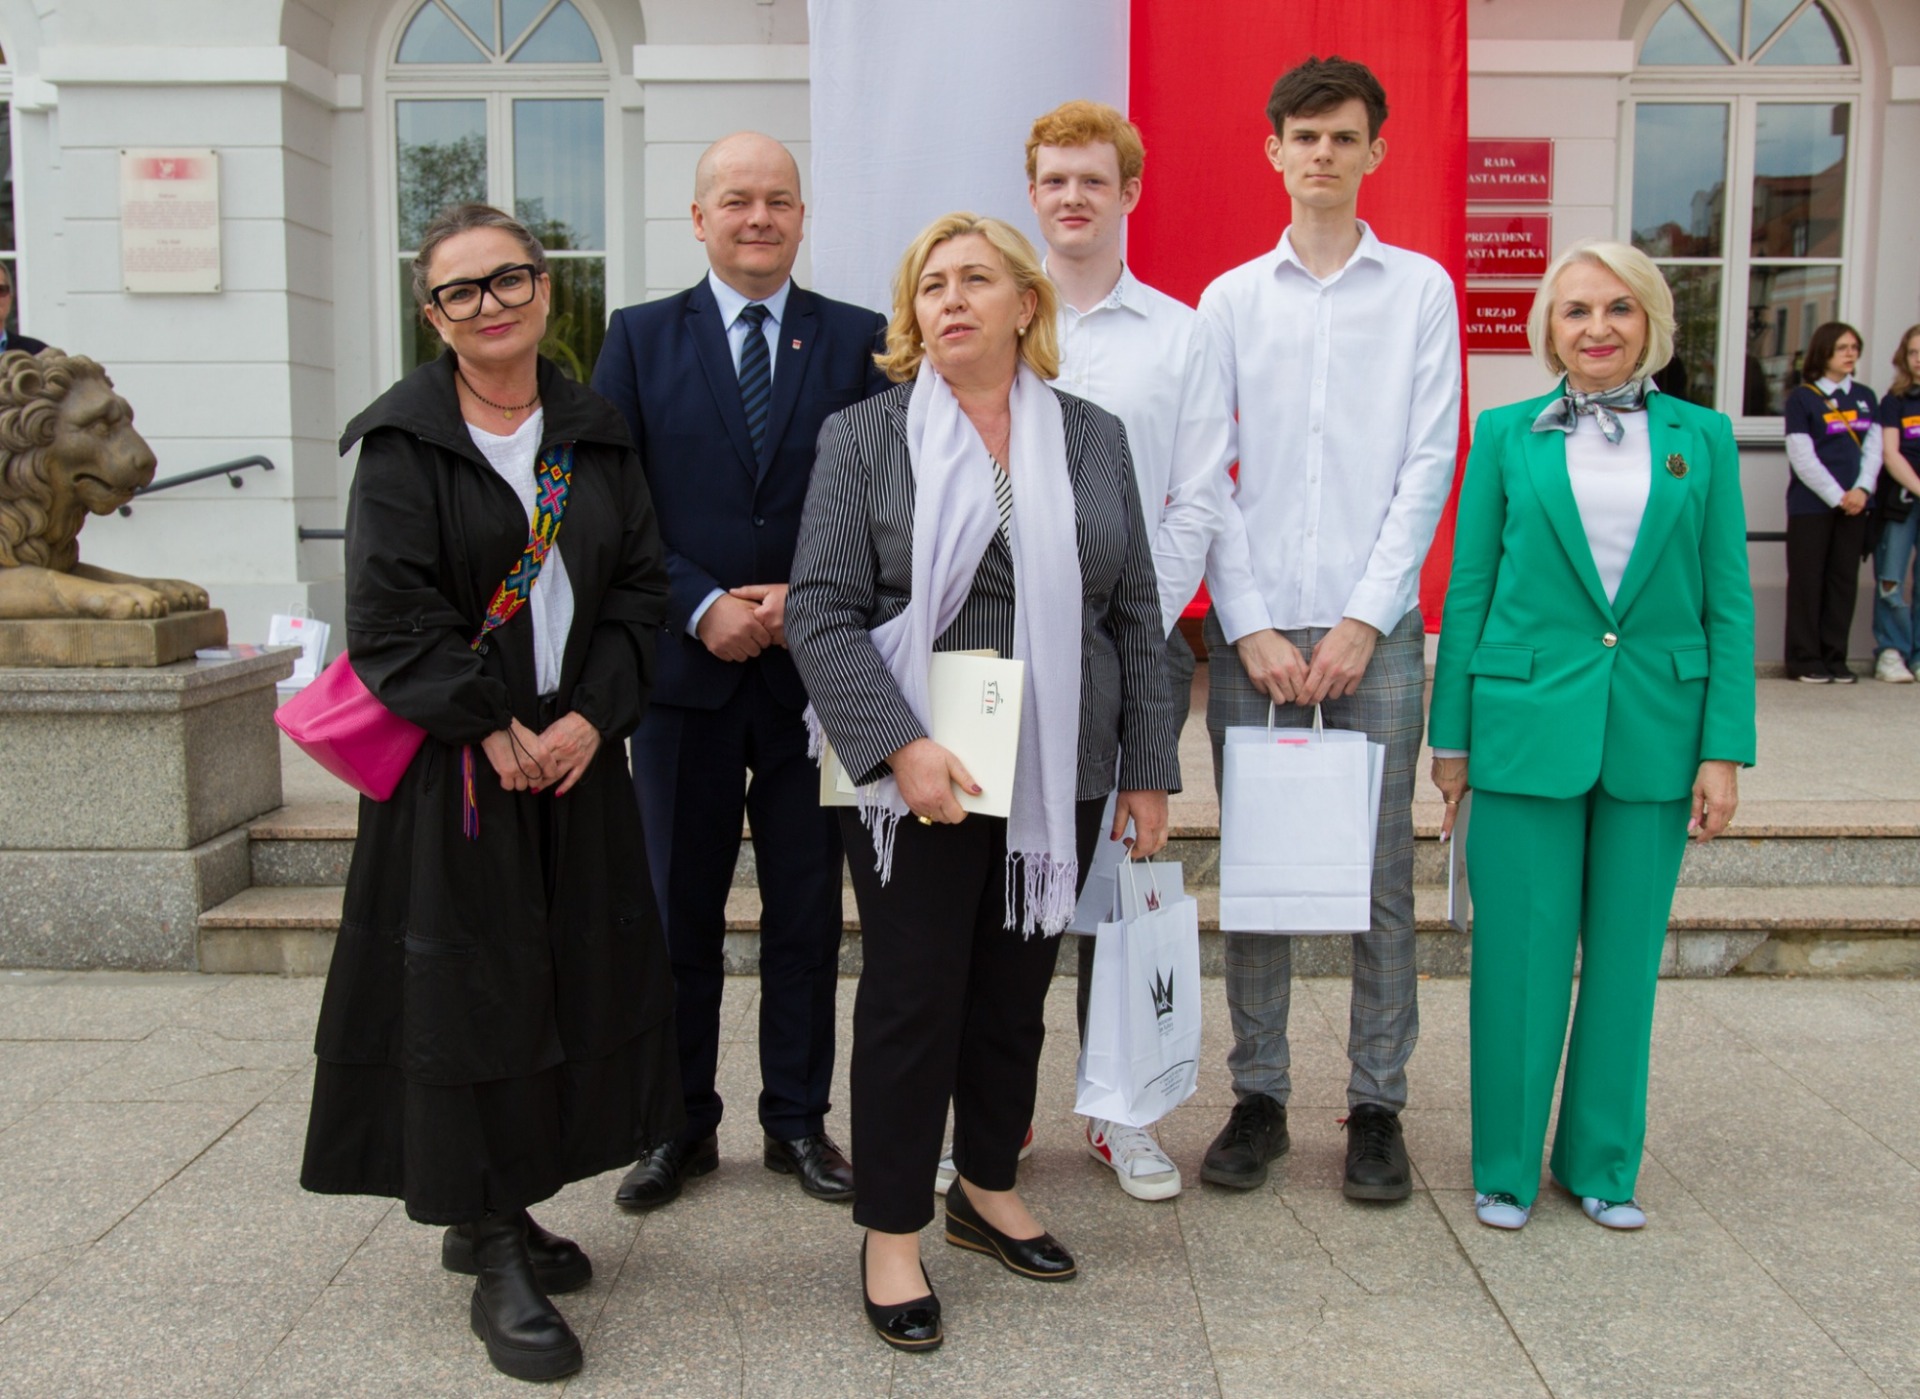 Na zdjęciu od lewej: Litosława Koper, Andrzej Nowakowski, Emilia Kiełbasiewicz, Szymon Kęsy, Bartosz Śmigielski i Elżbieta Gapińska